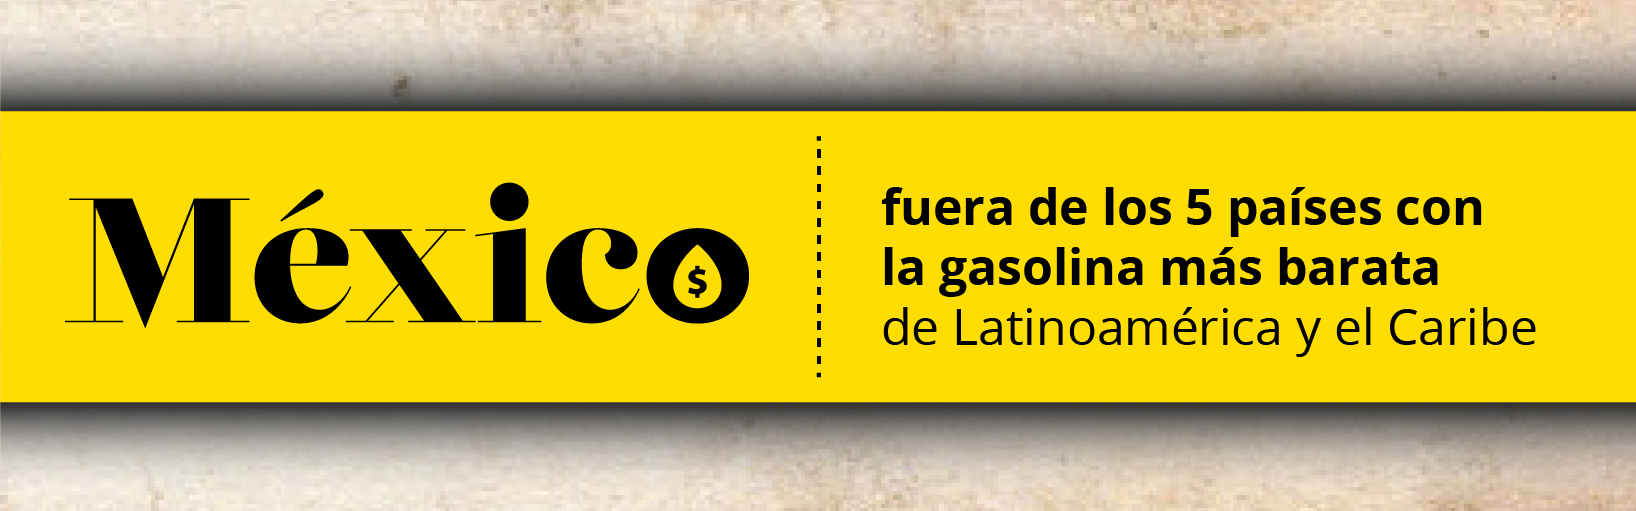  México fuera de los 5 países con la gasolina más barata de Latinoamérica y el Caribe